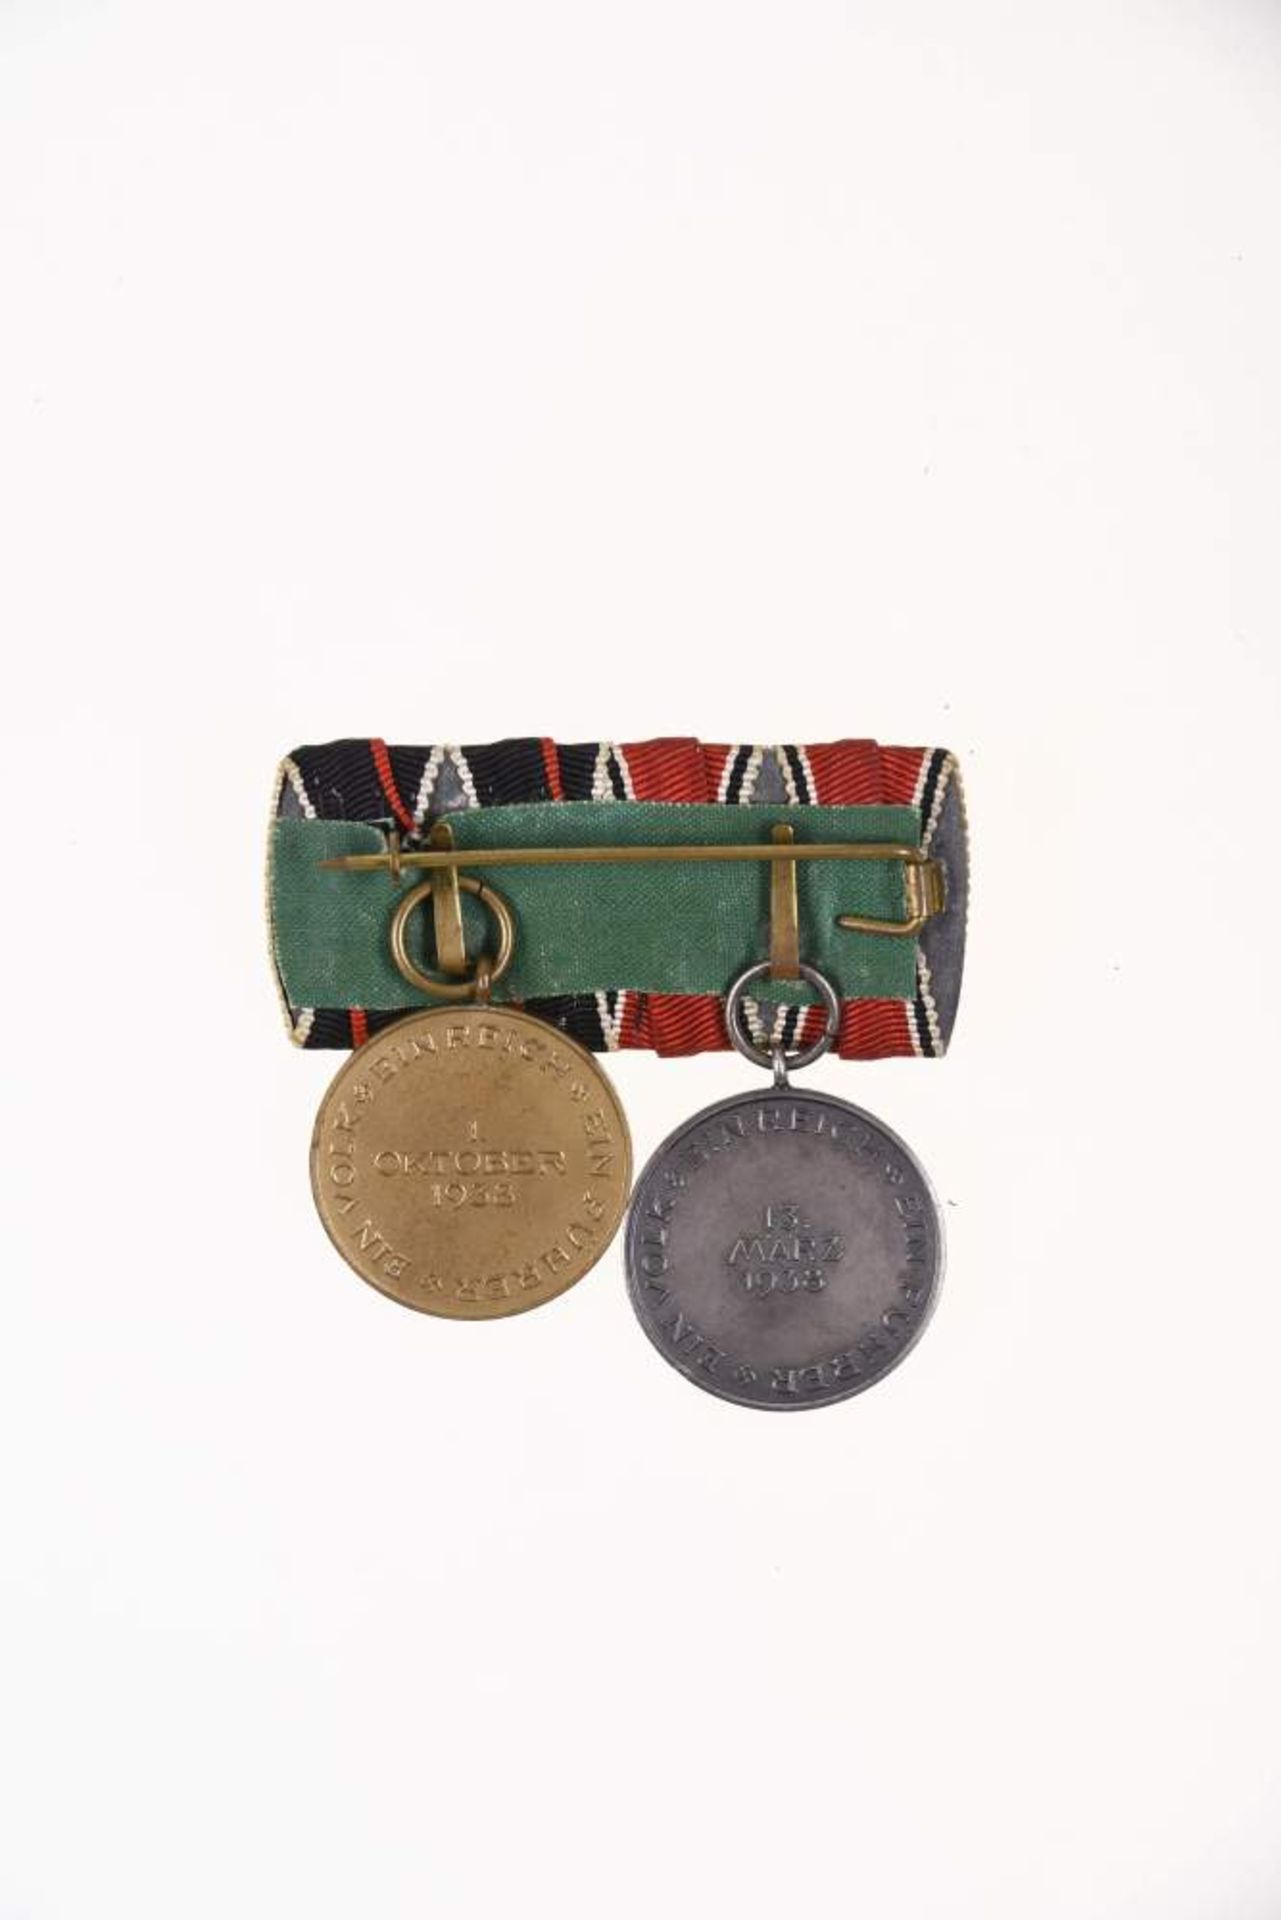 Bandspange mit Anschlussmedaillen, Österreich Medaille zur Erinnerung an den 13. März 1938 Bronze - Bild 2 aus 2